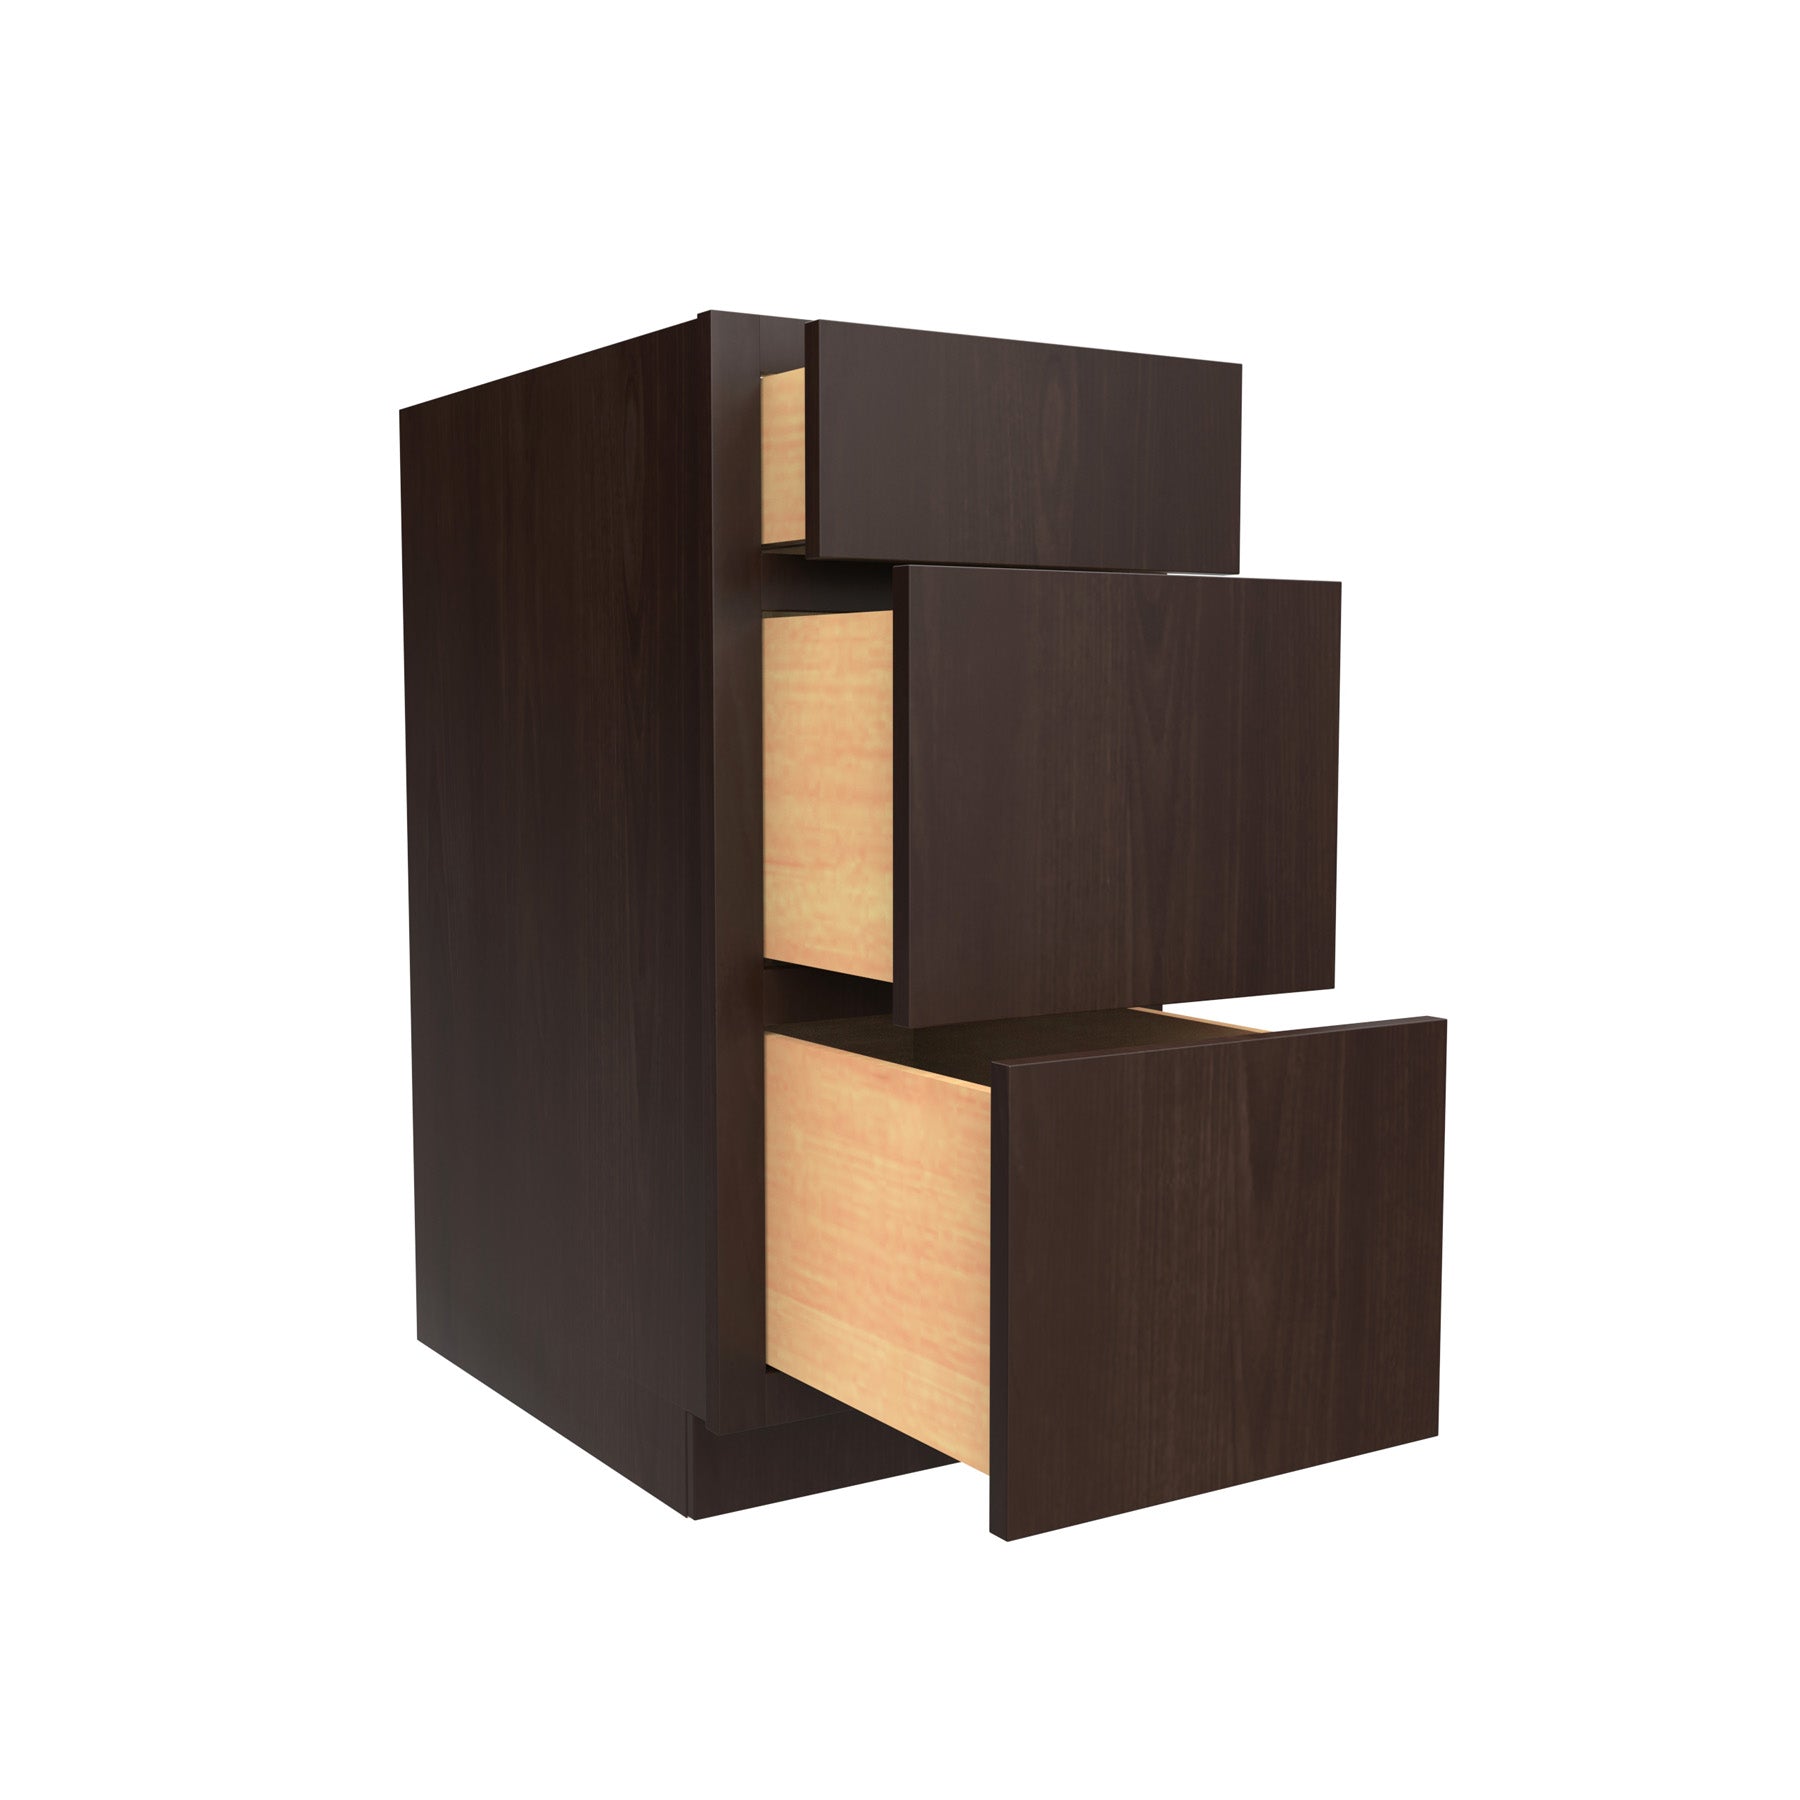 3 Drawer Base Cabinet | 15"W x 34.5"H x 24"D